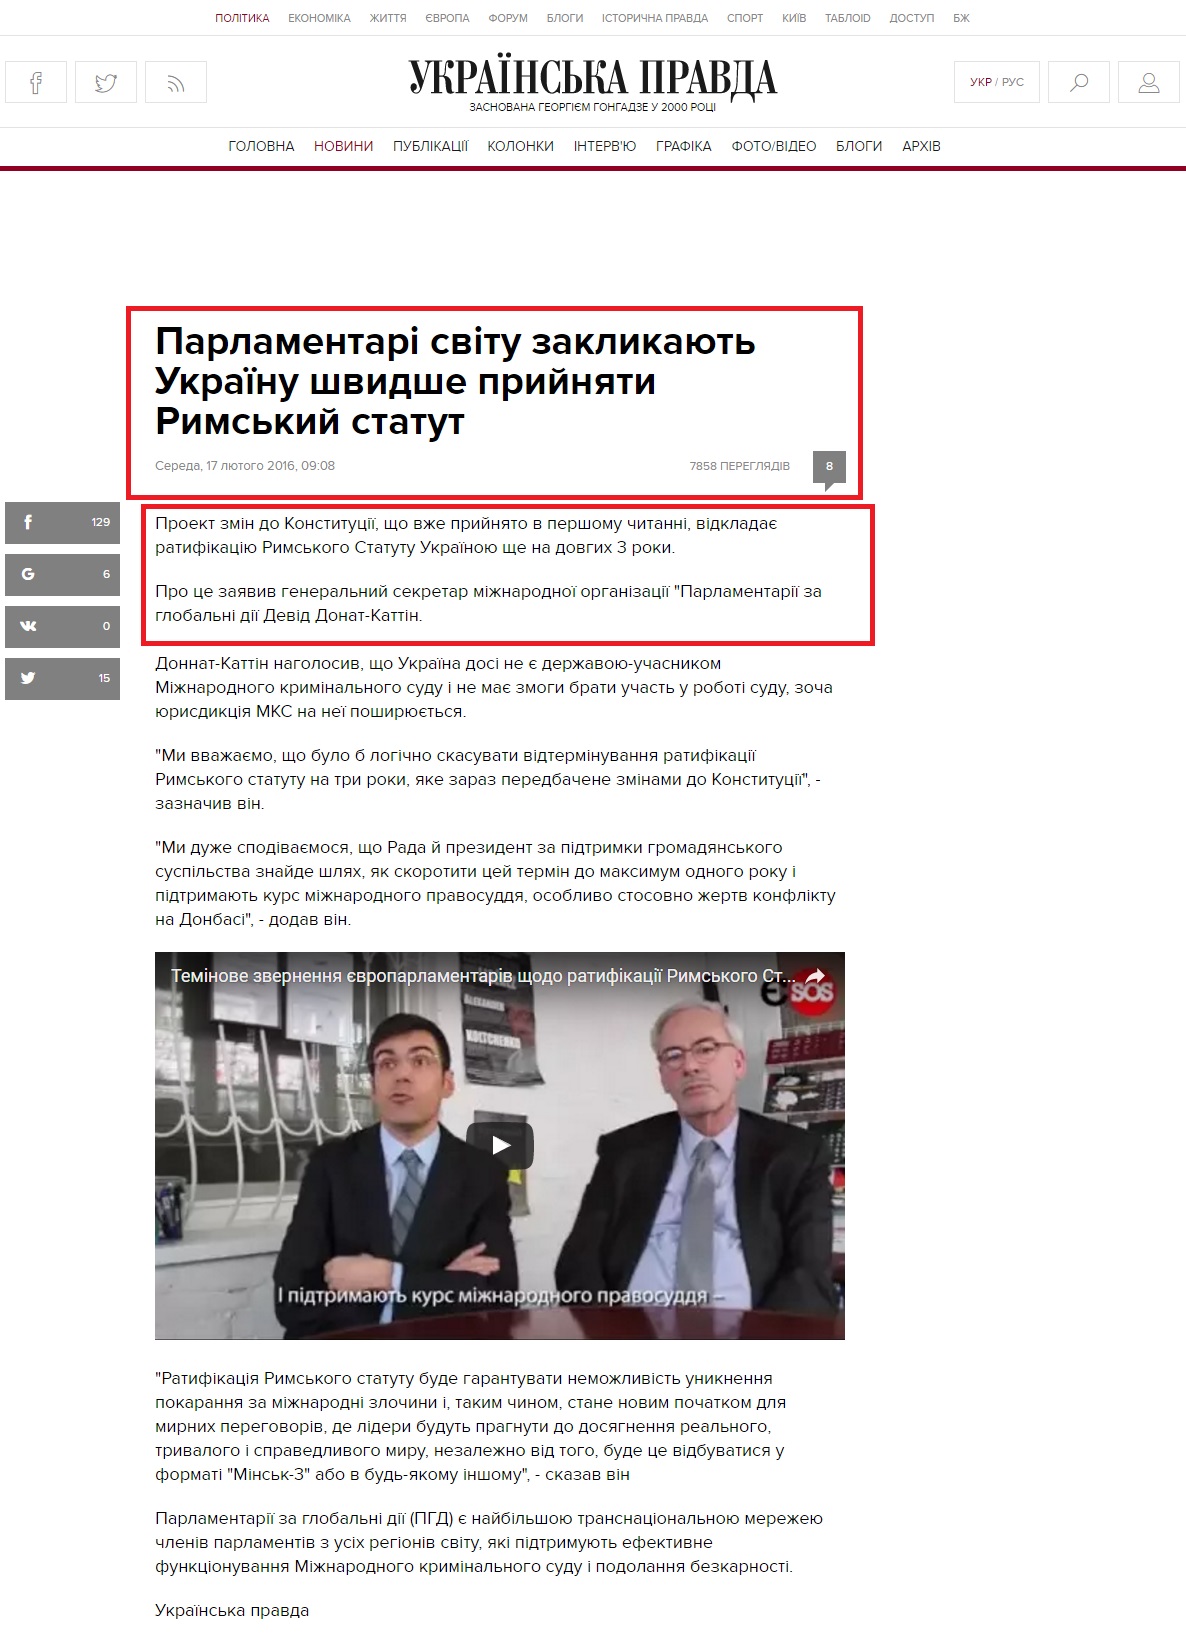 http://www.pravda.com.ua/news/2016/02/17/7099279/